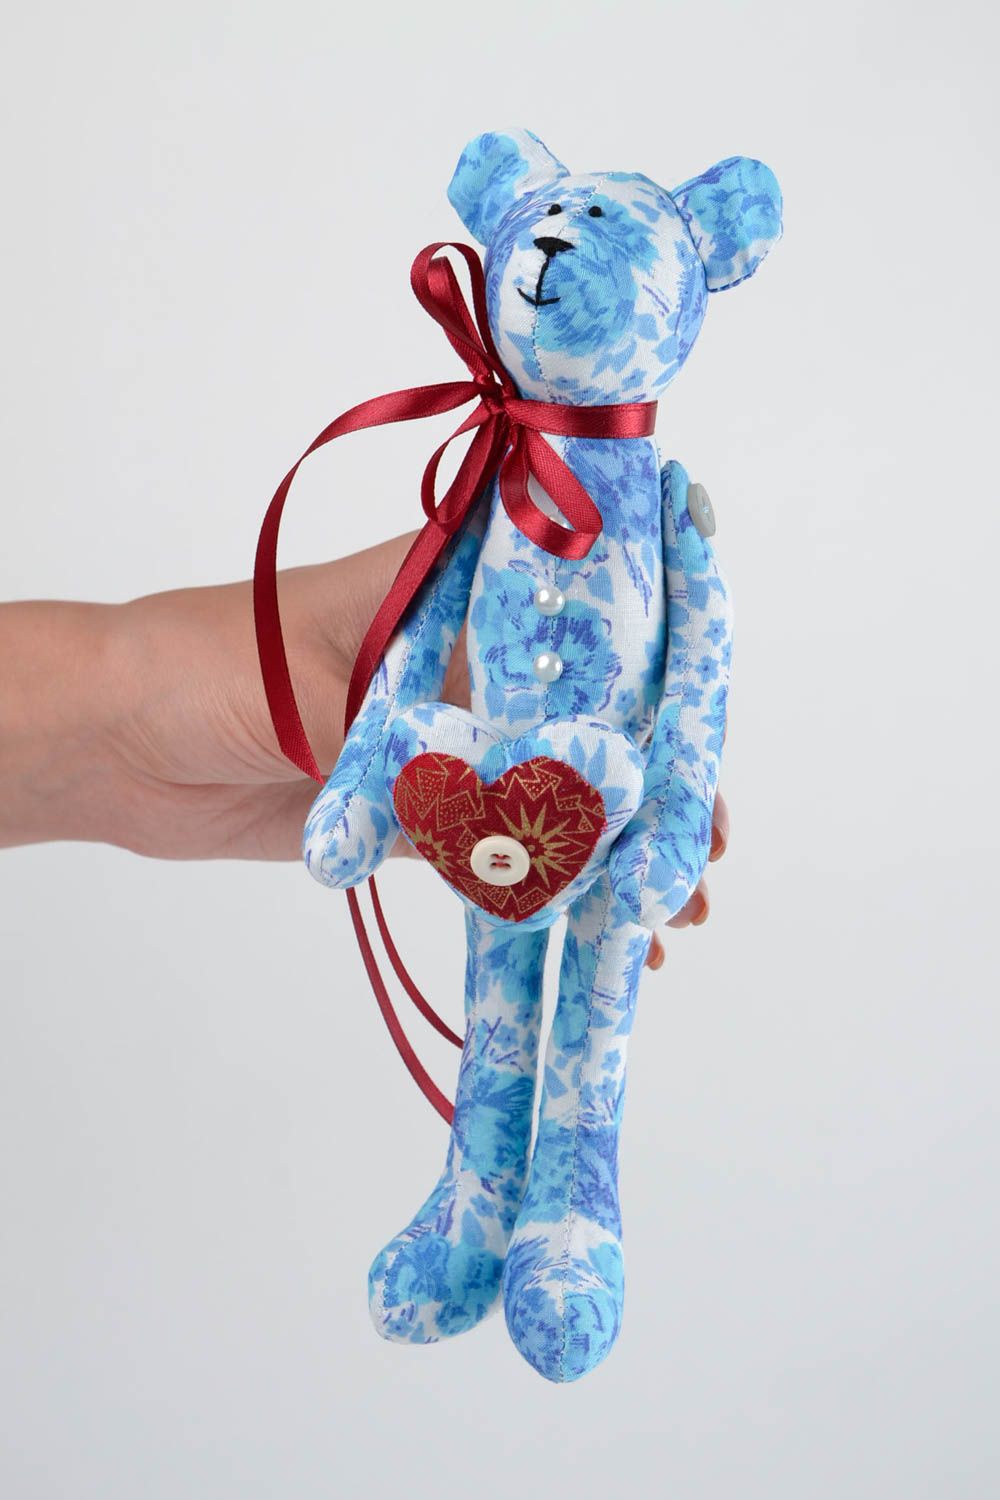 Игрушка мишка из ткани игрушка ручной работы голубая интересный подарок для дома фото 2